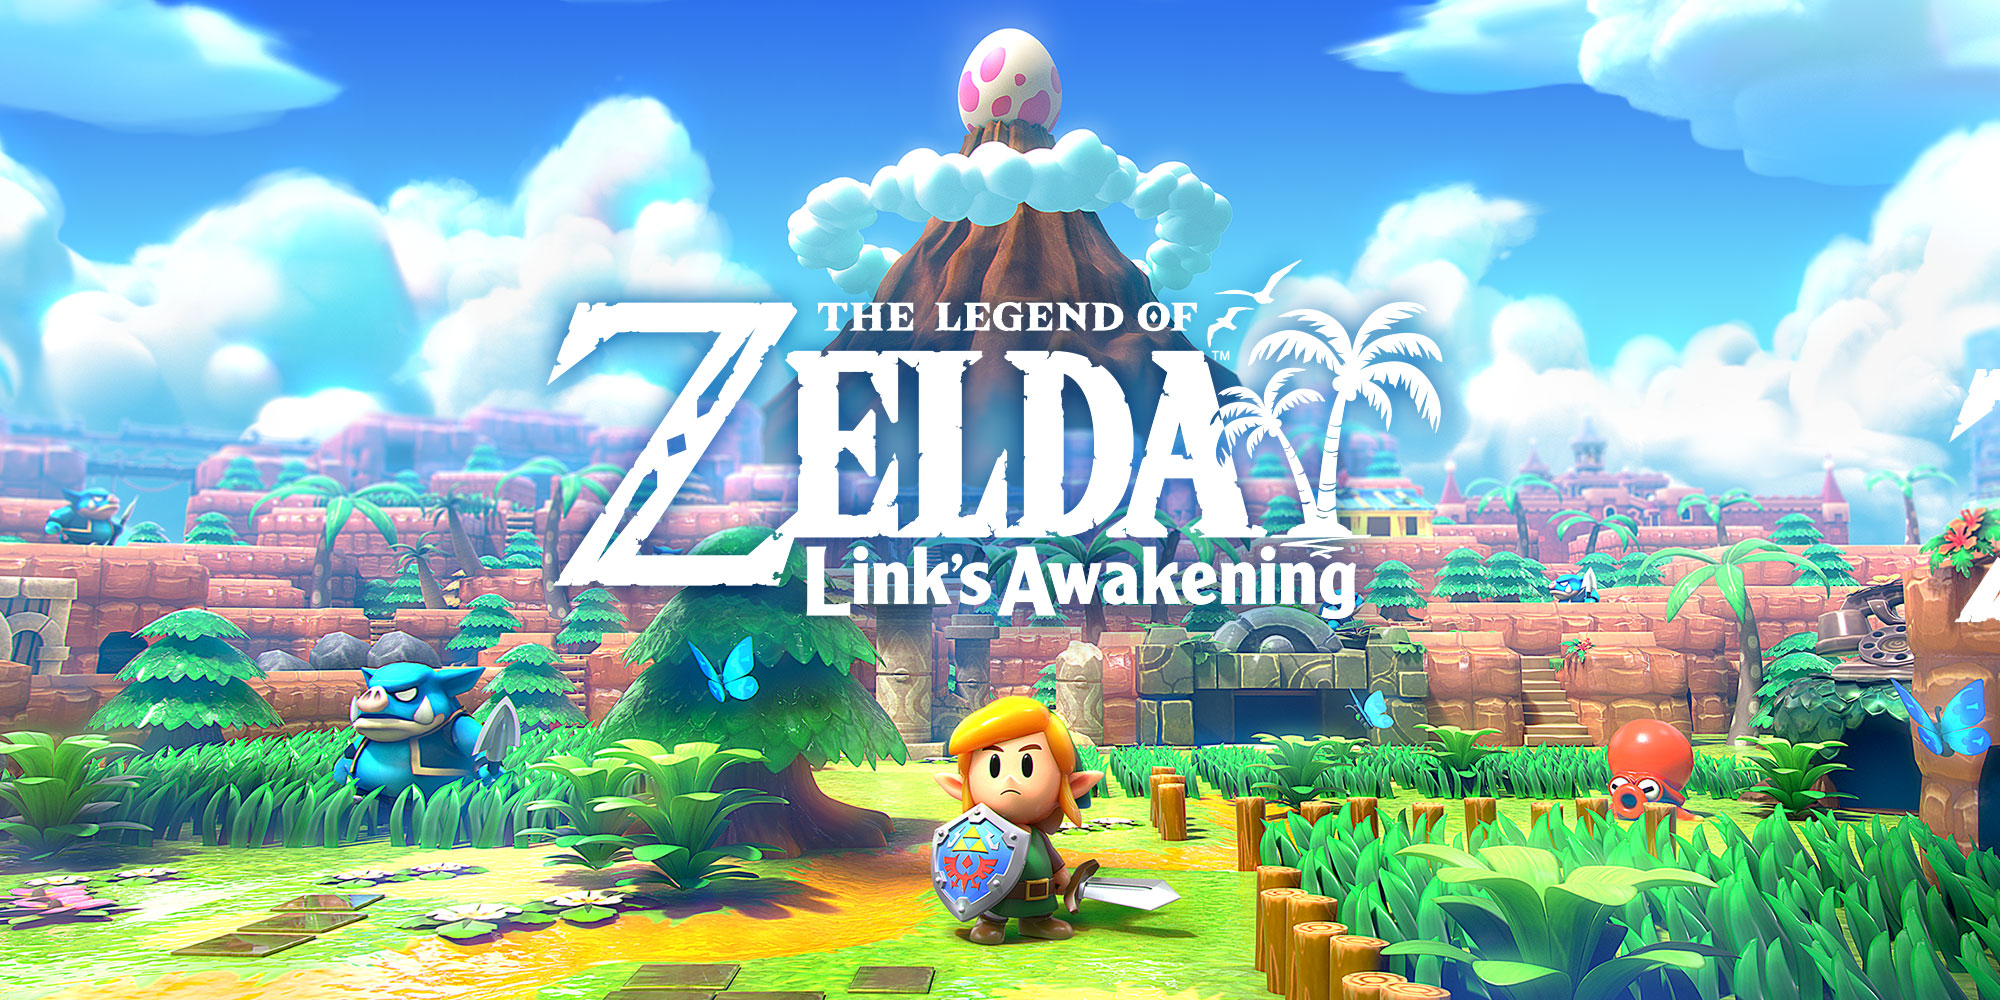 Erfahrt mehr zu The Legend of Zelda: Link's Awakening von Eiji Aonuma, dem Producer der Serie!